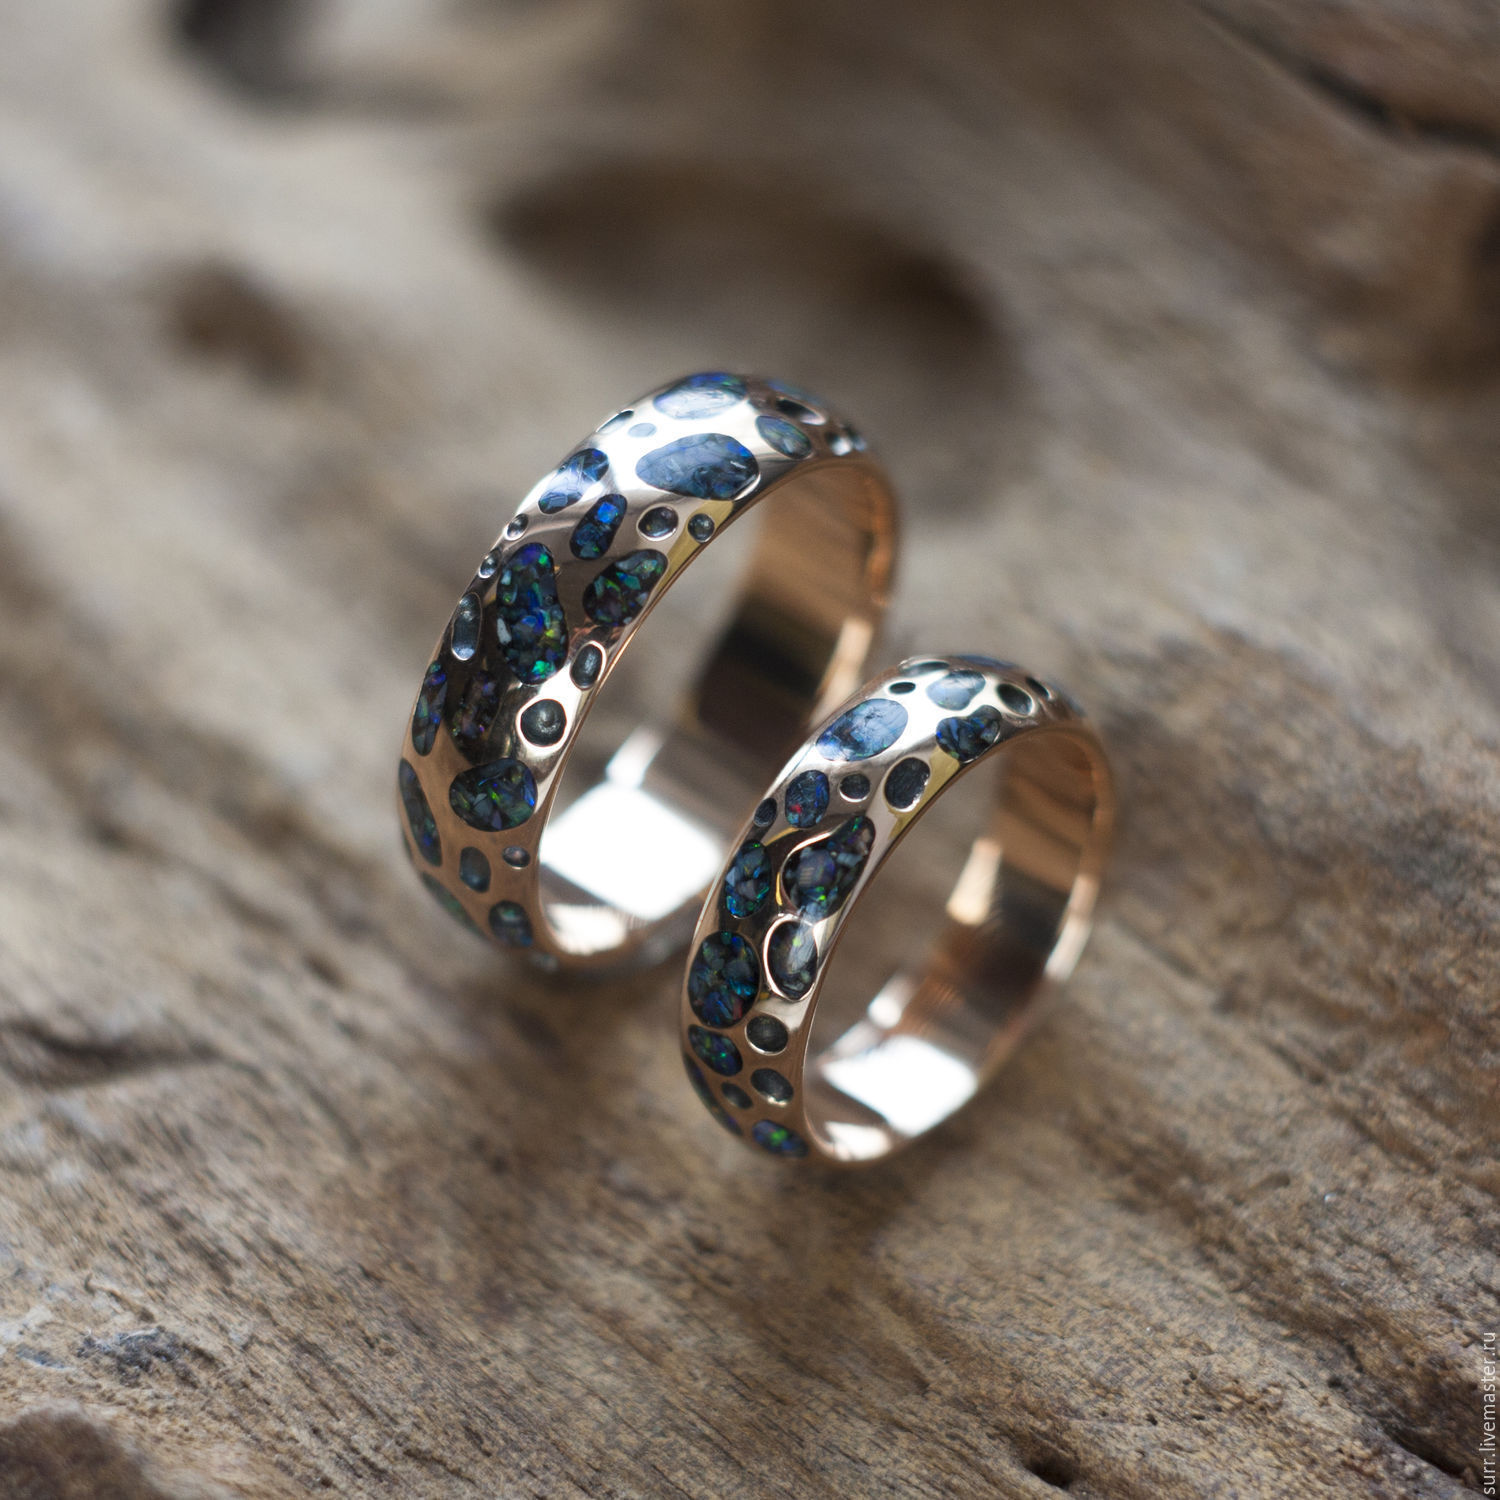 Дизайн обручального кольца с камнями